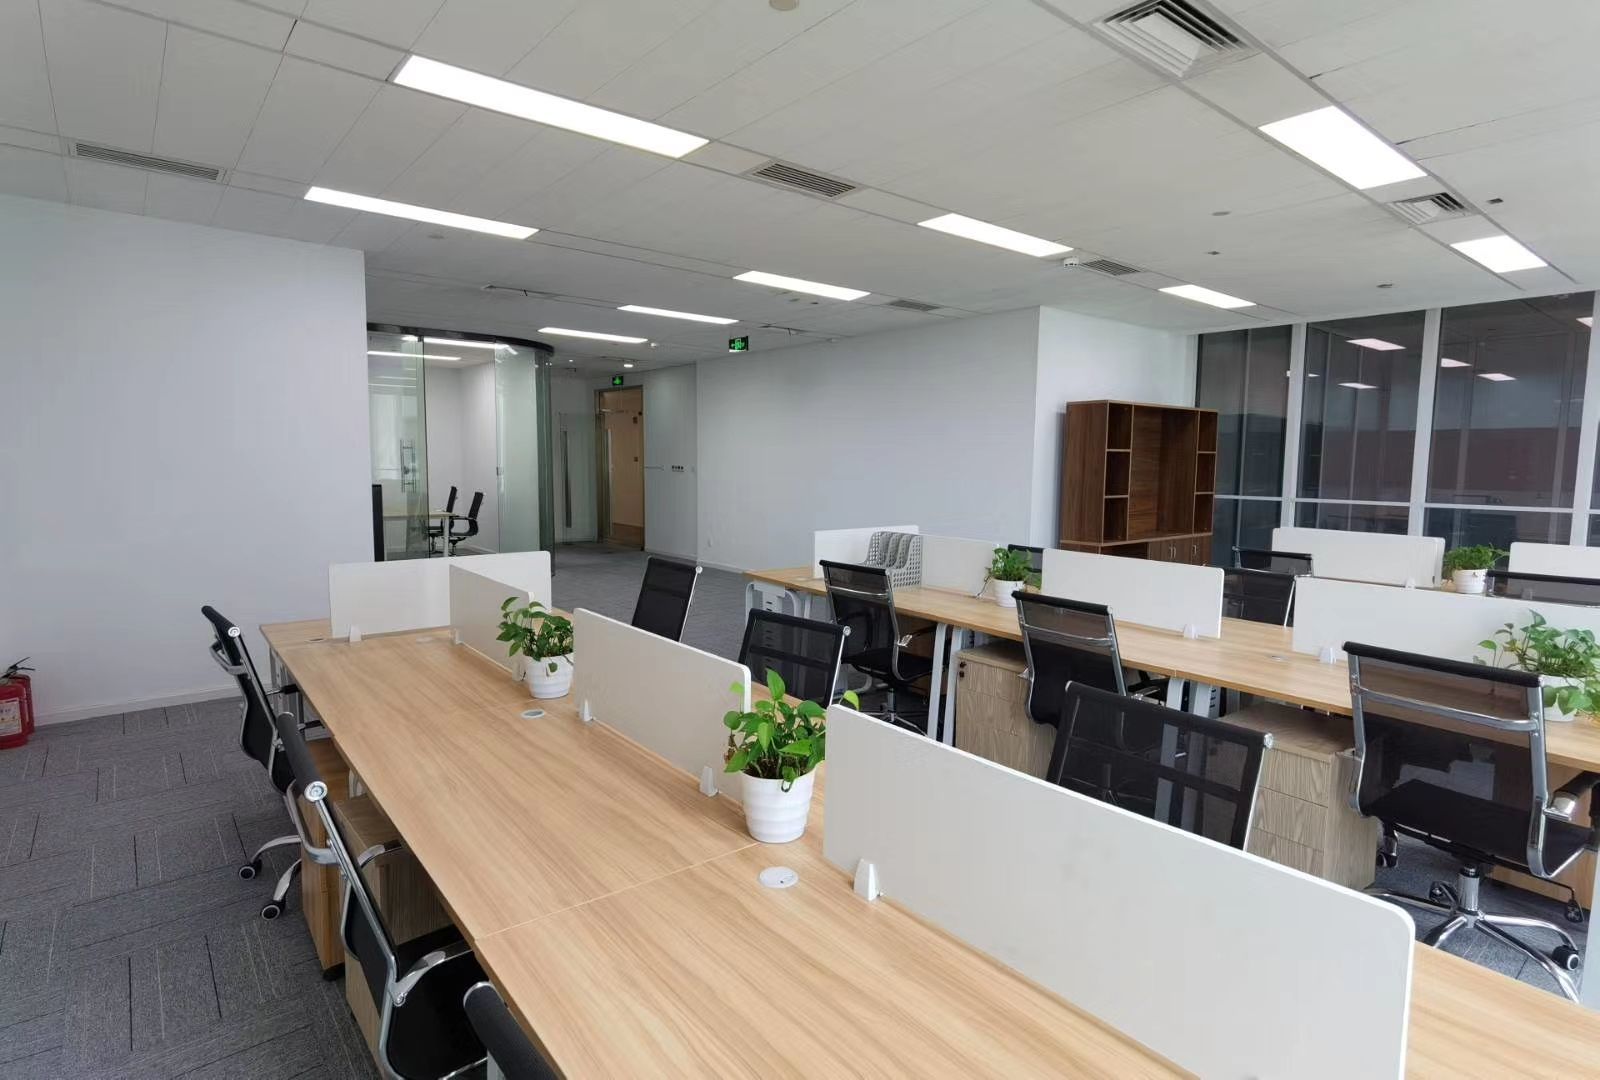 零号湾全球创新创业集聚区219平米办公室出租-租金价格2.23元/m²/天